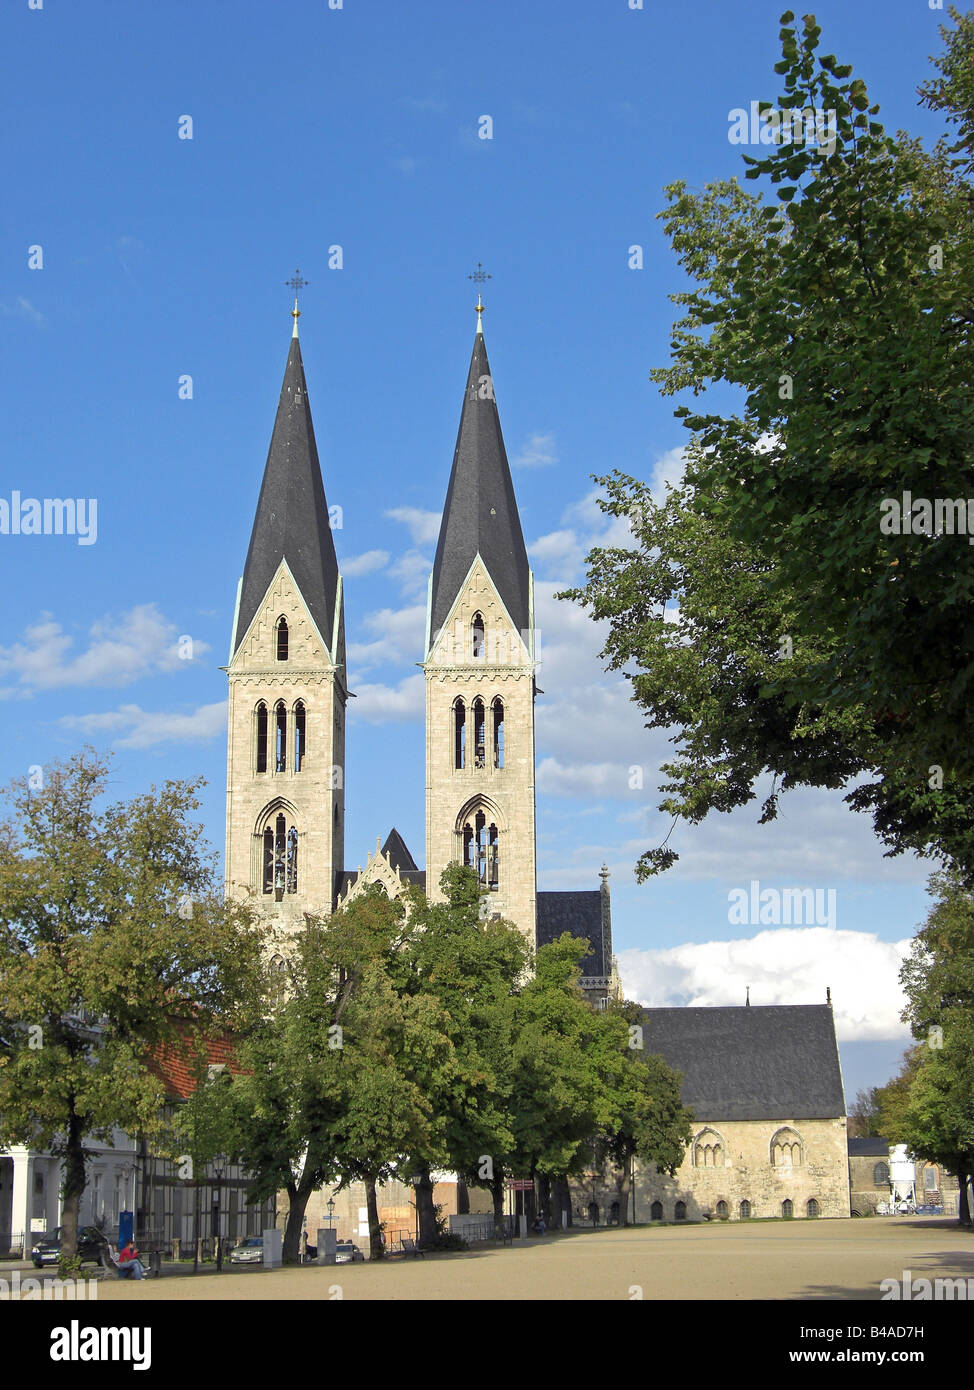 Géographie / billet, l'Allemagne, la Saxe-Anhalt, Halberstadt, Églises, cathédrale, vue extérieure, Additional-Rights Clearance-Info-Not-Available- Banque D'Images